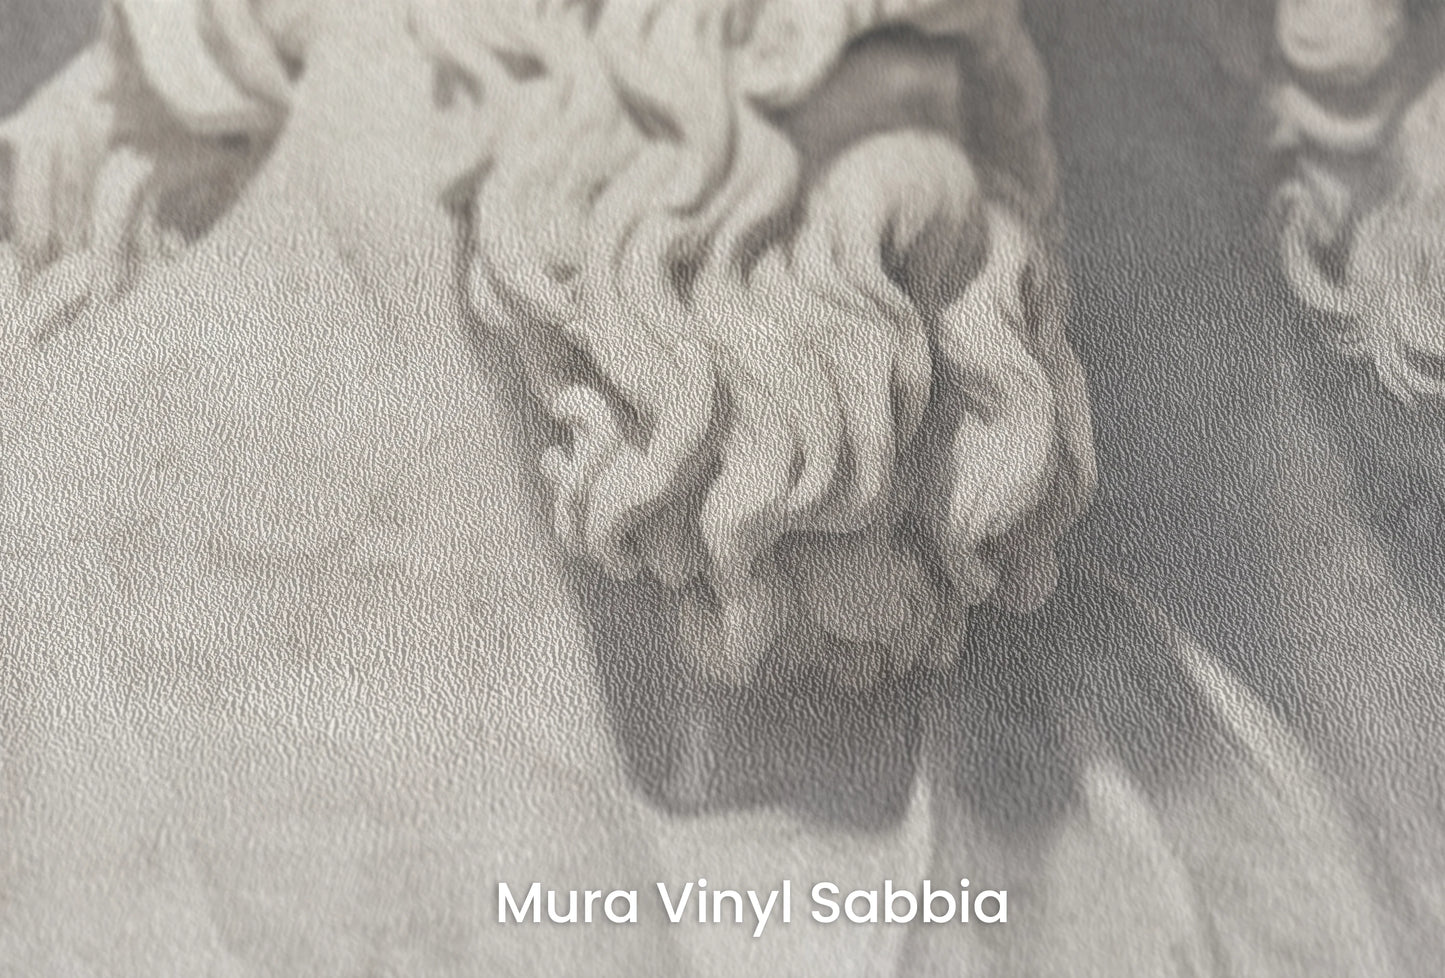 Zbliżenie na artystyczną fototapetę o nazwie Divine Gaze na podłożu Mura Vinyl Sabbia struktura grubego ziarna piasku.